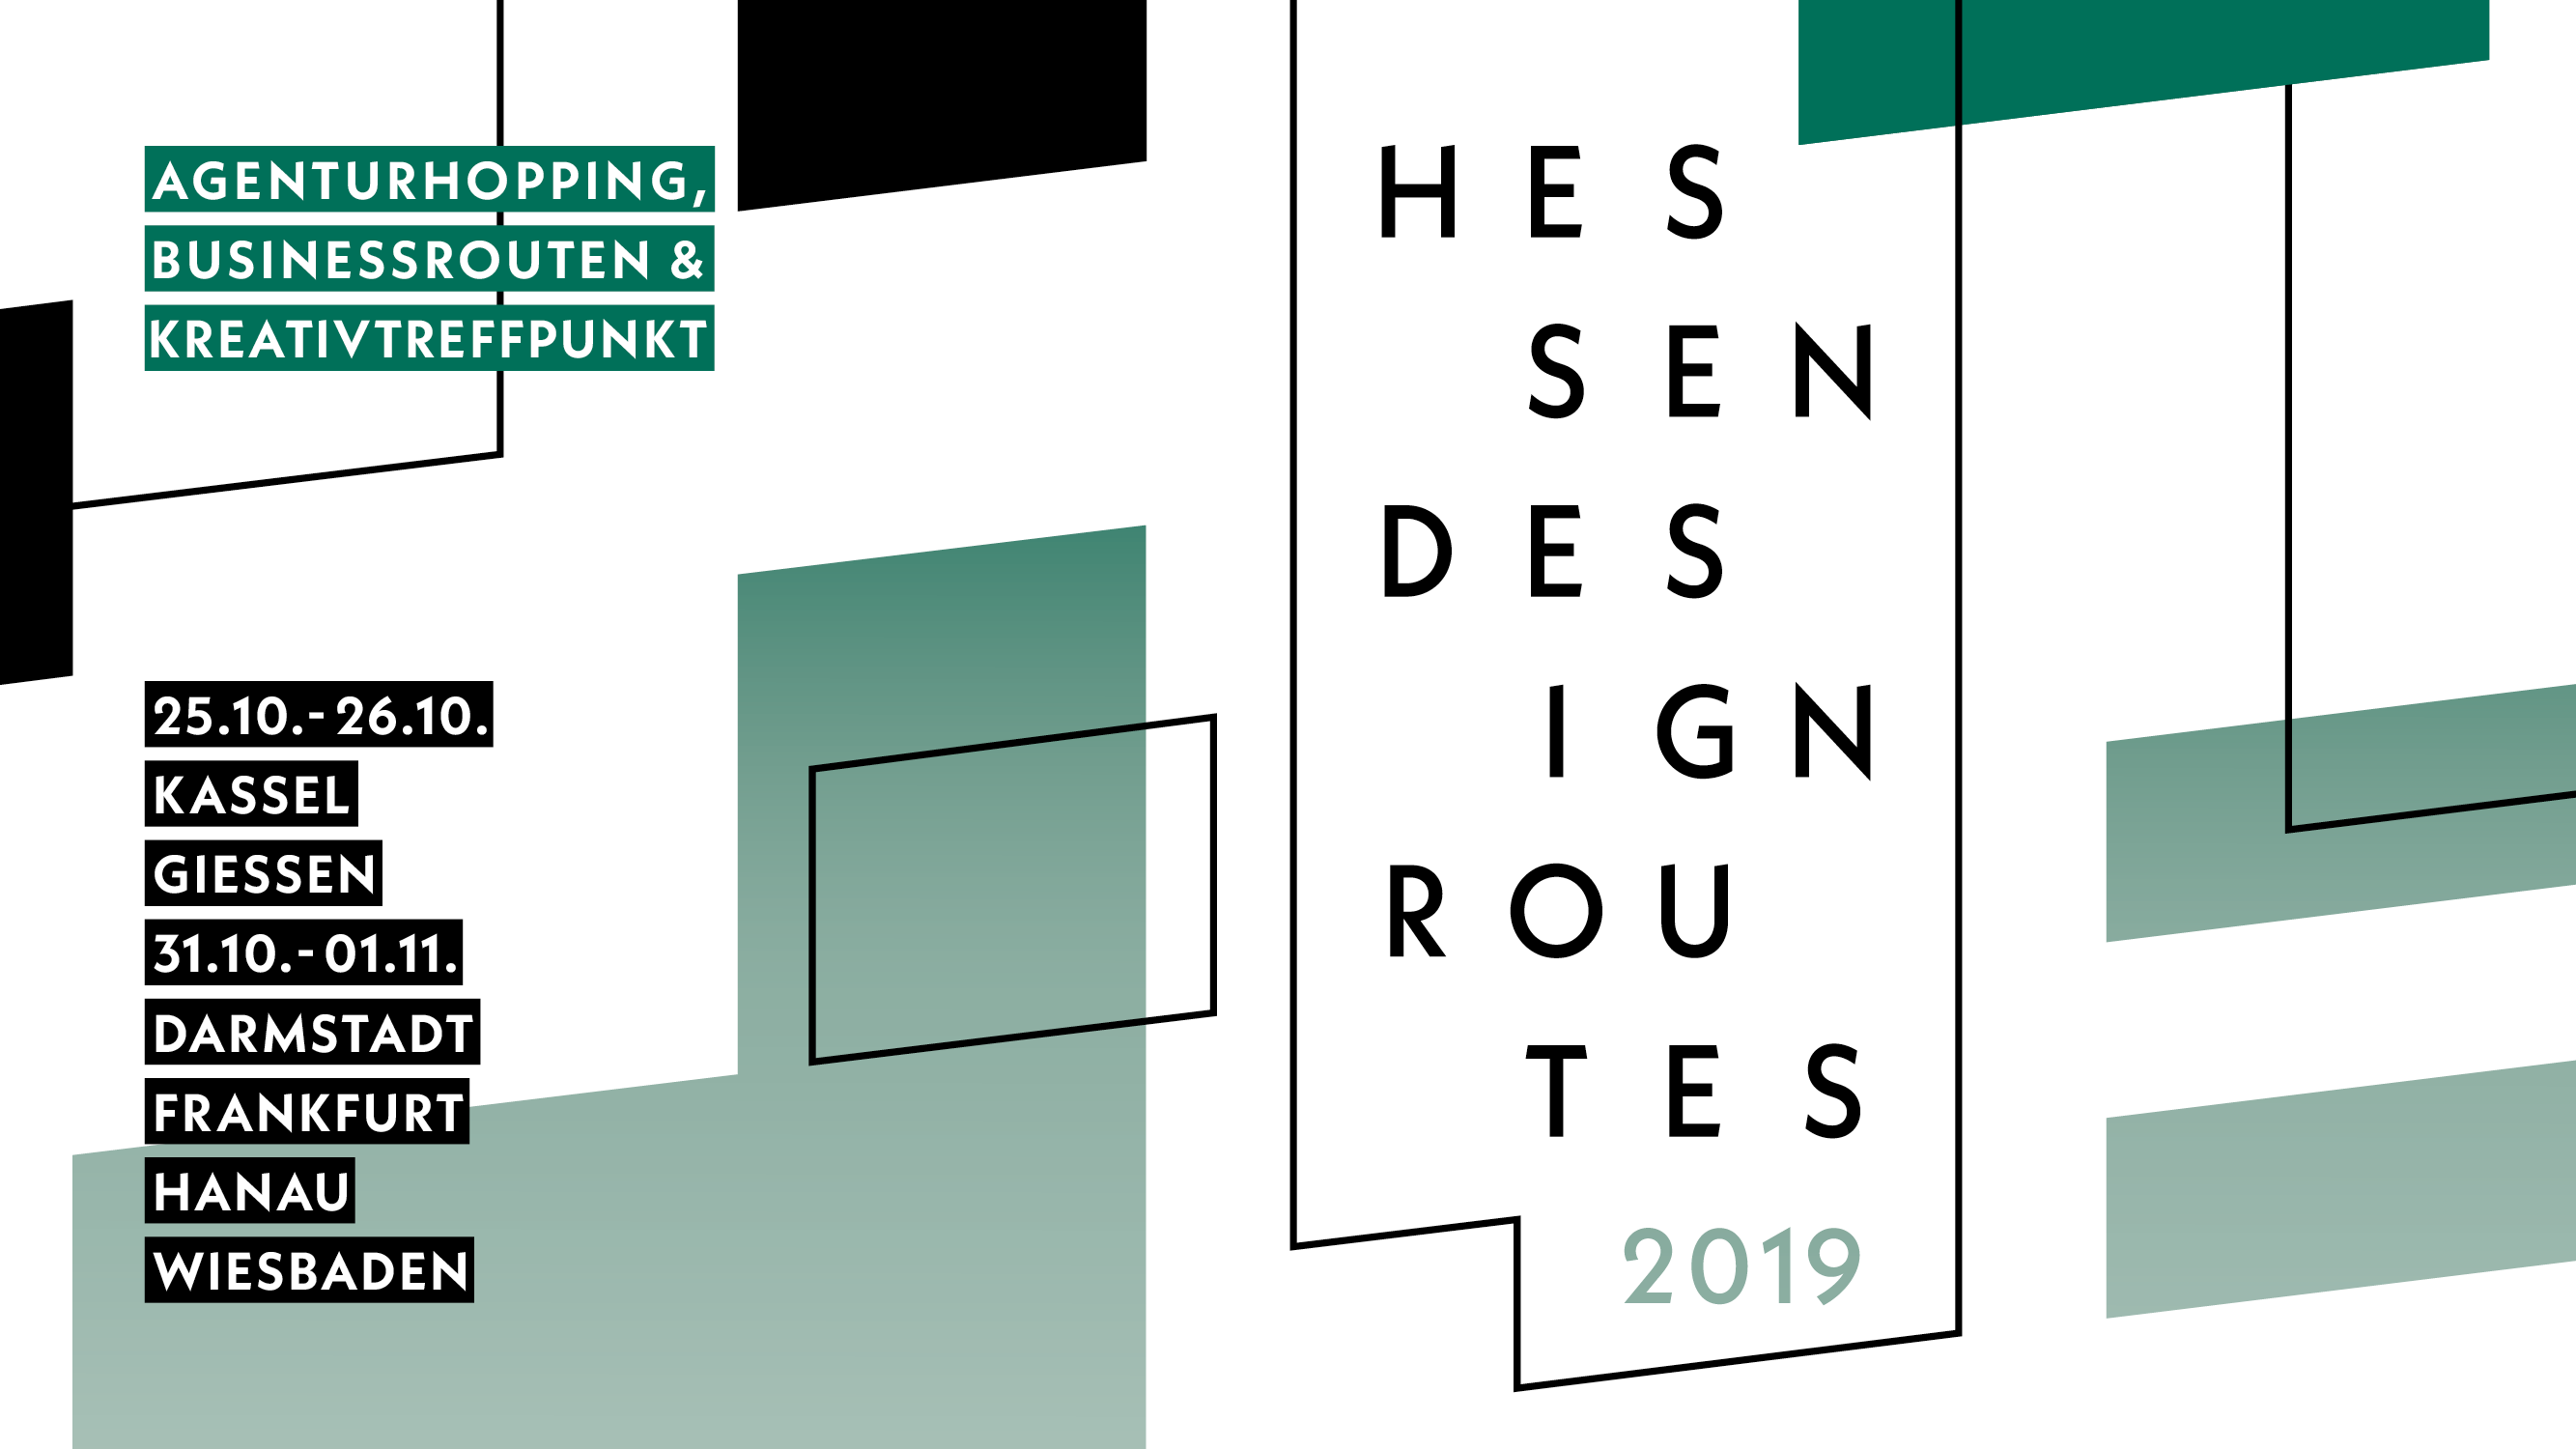 Hessen Design Routes 2019 – jetzt mitmachen!